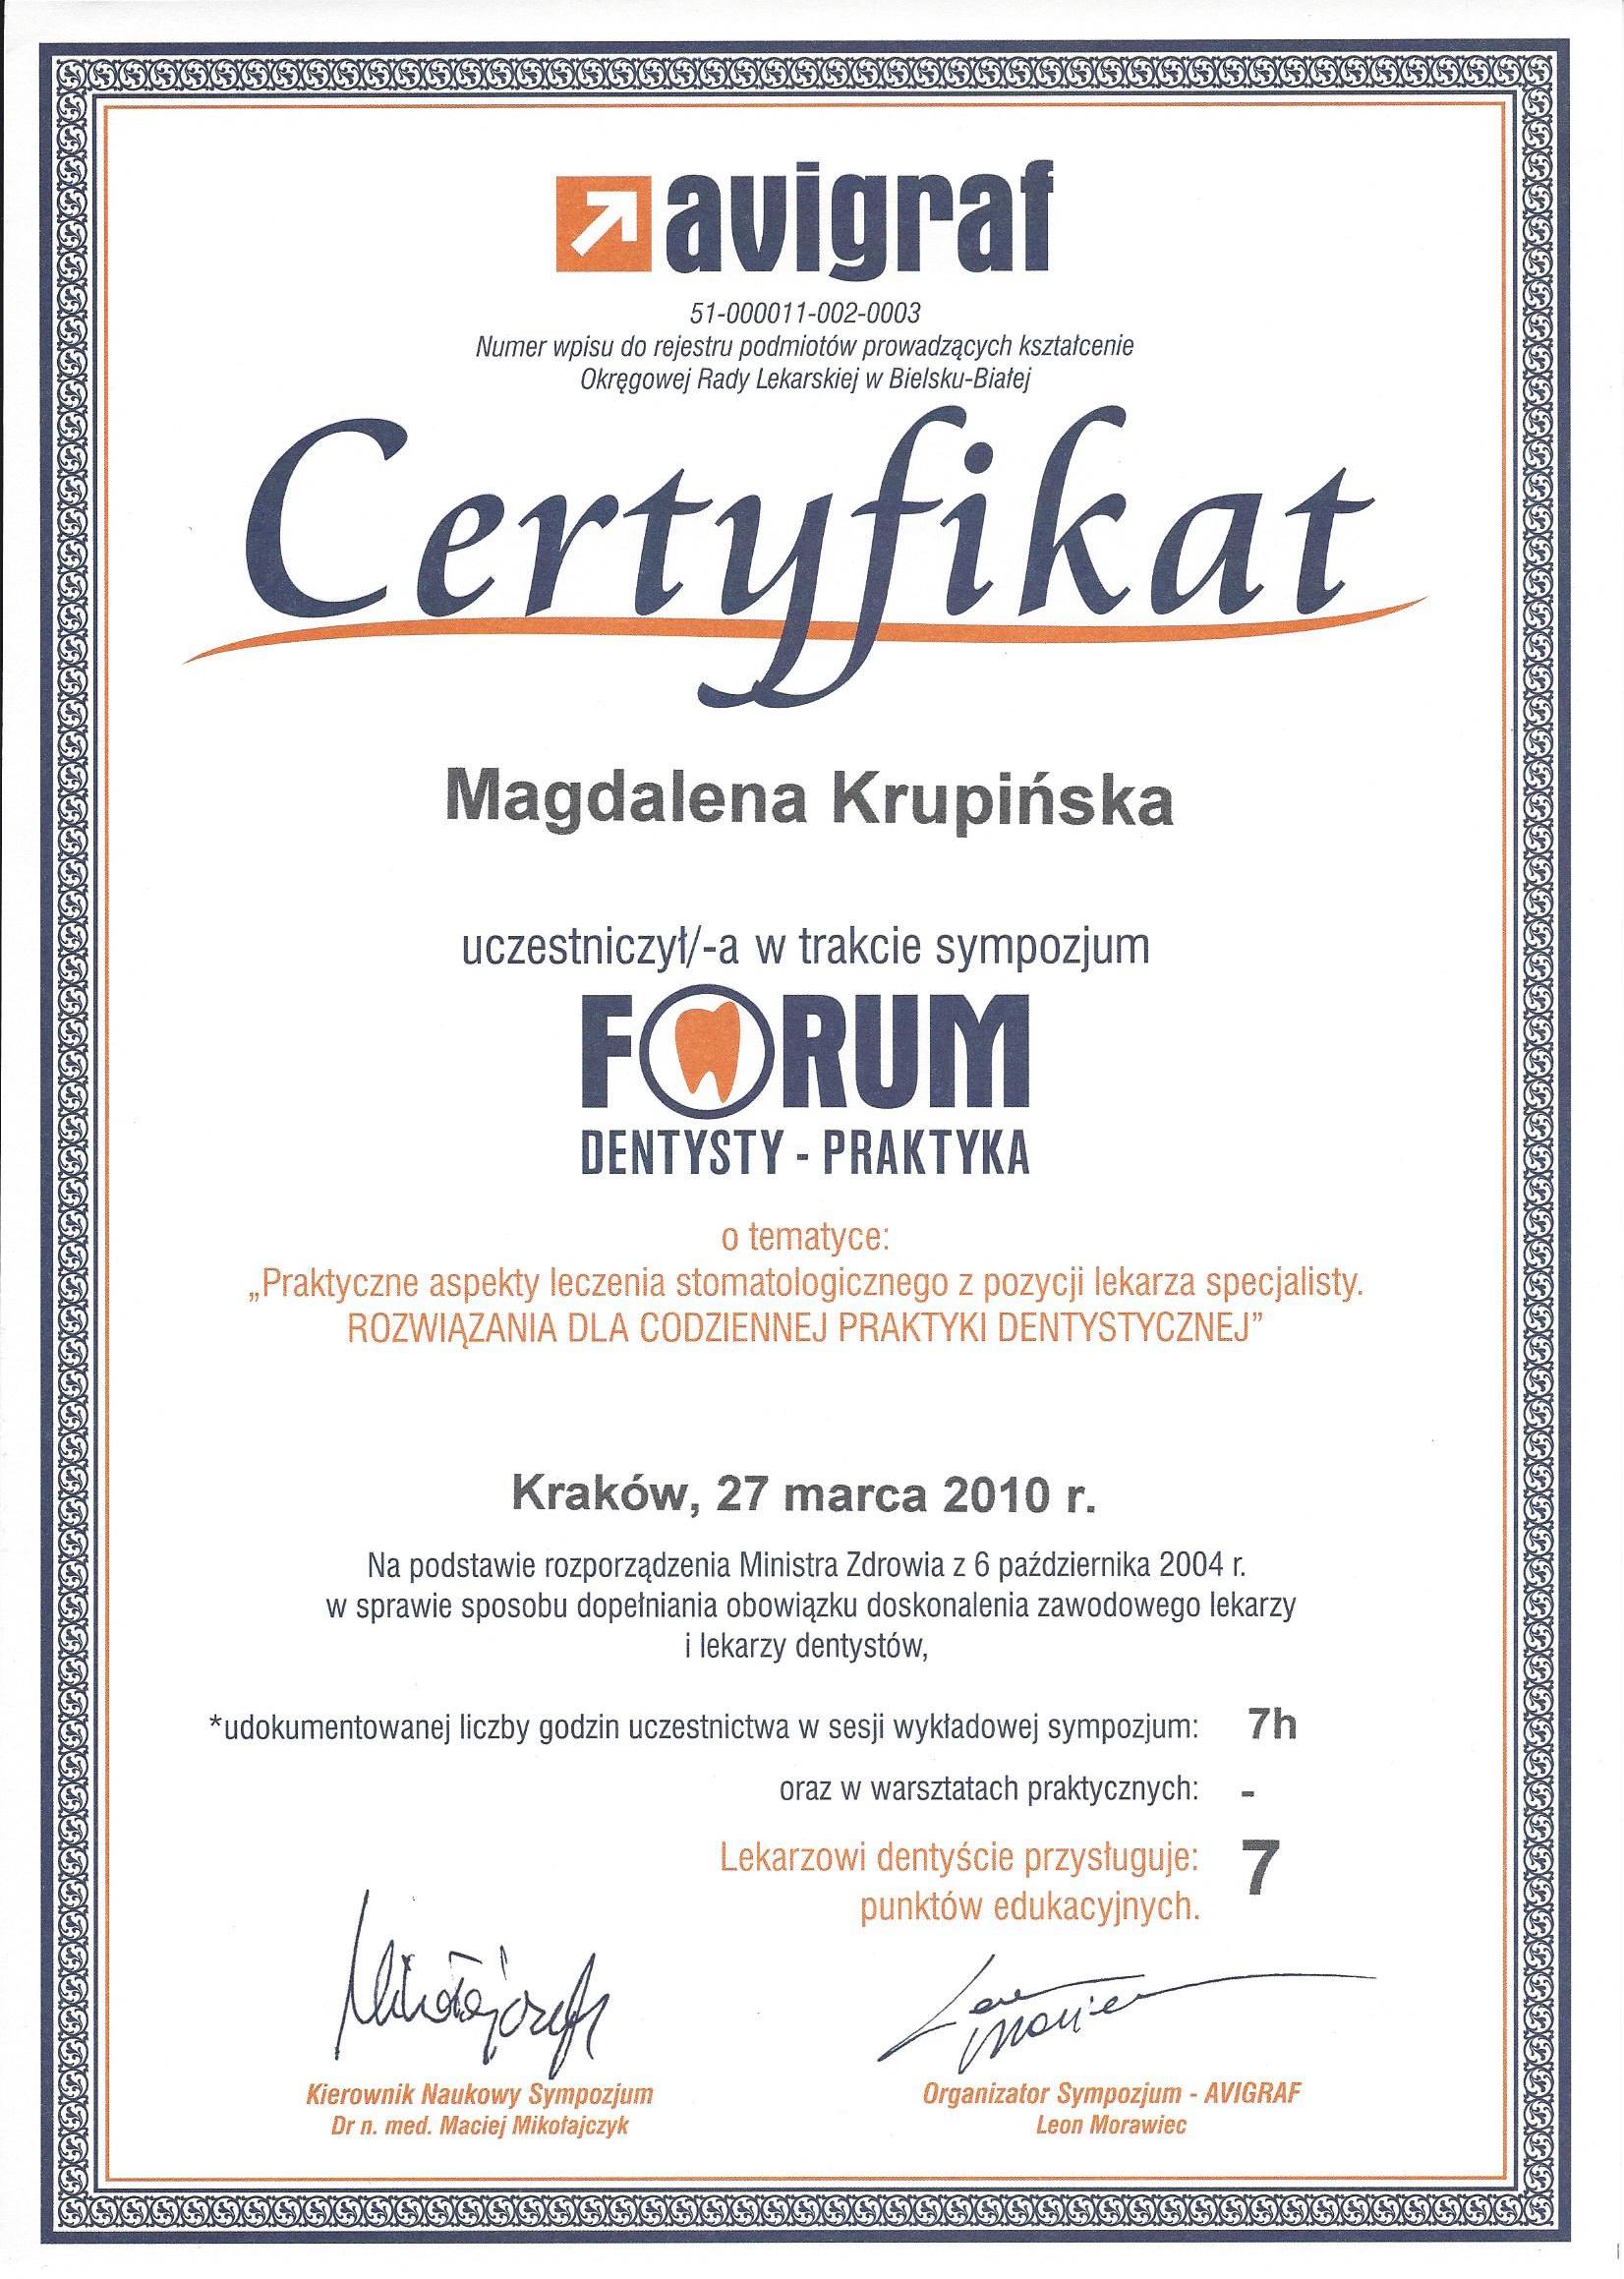 Magdalena Krupińska certyfikat 49